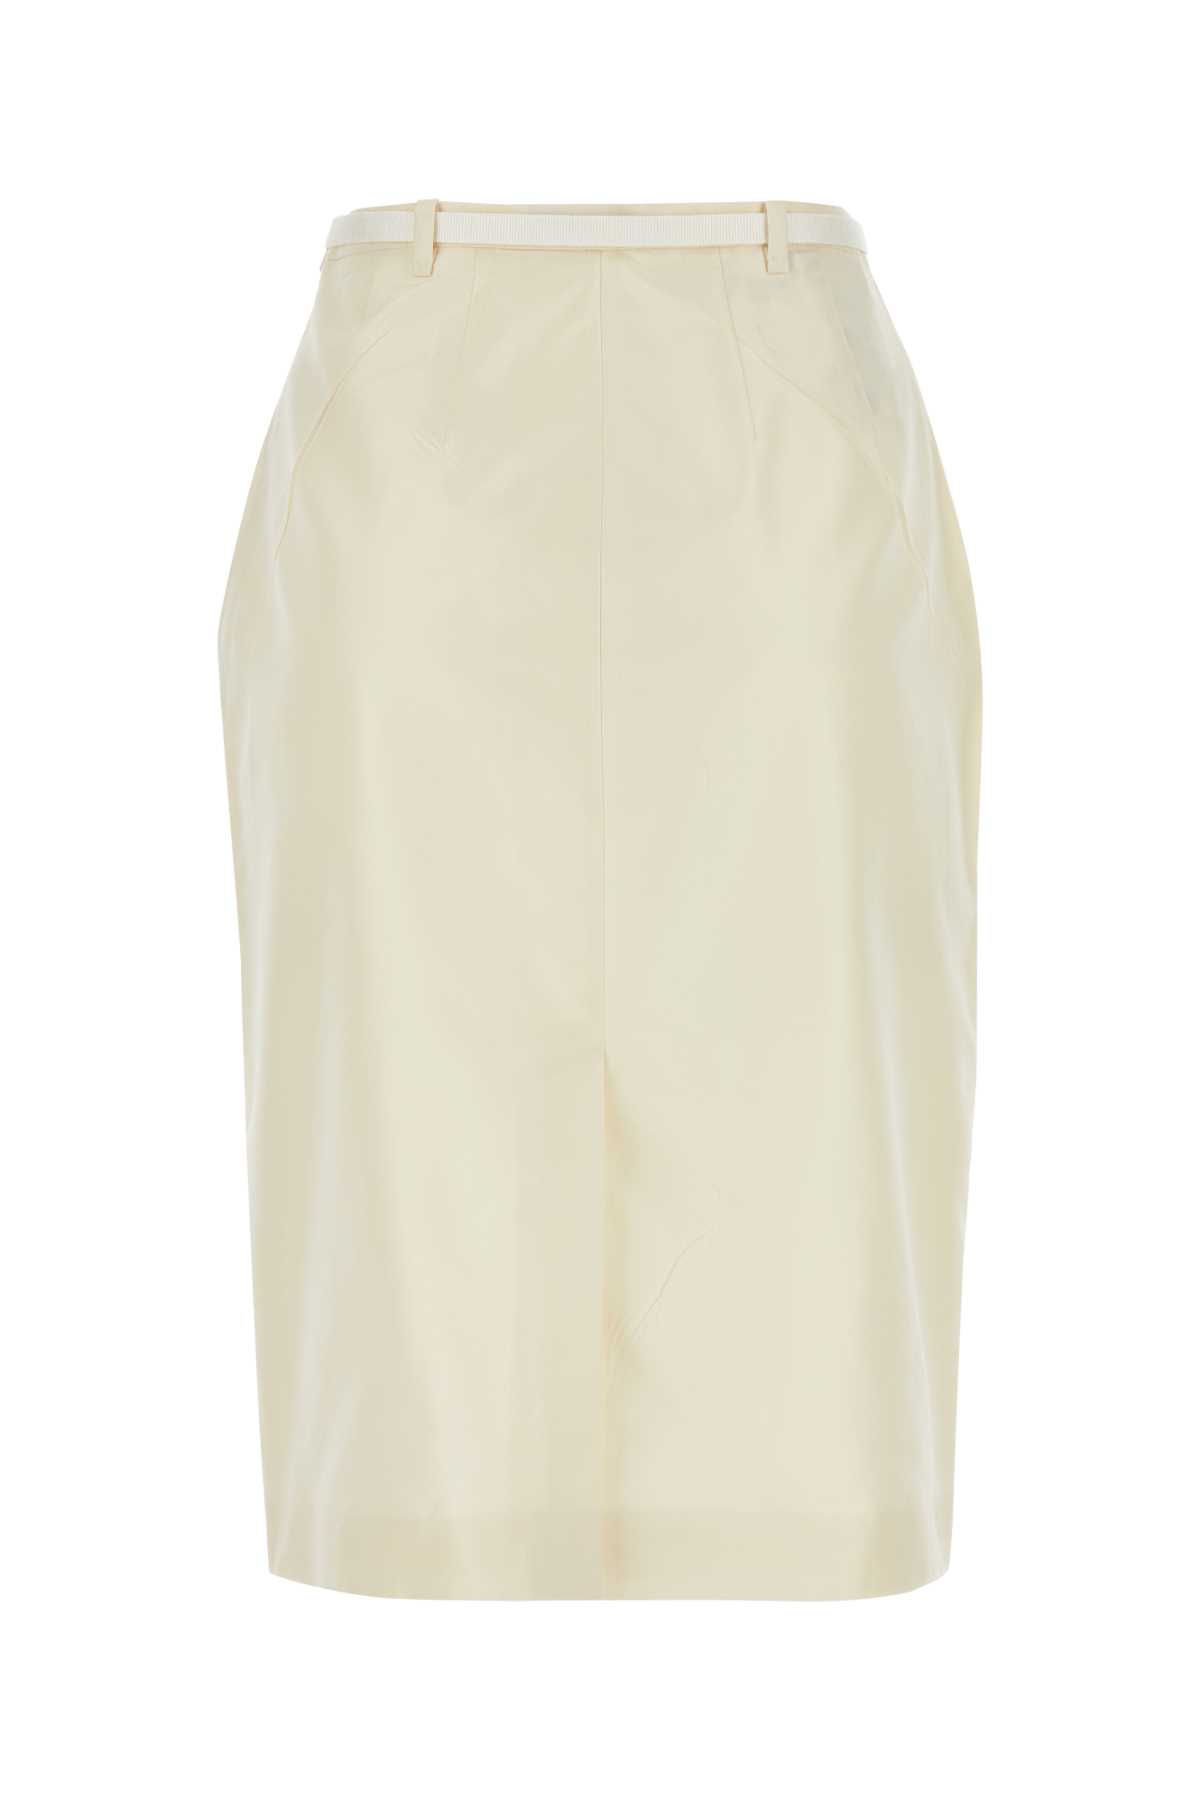 Prada Ivory Faille Skirt In Avorio